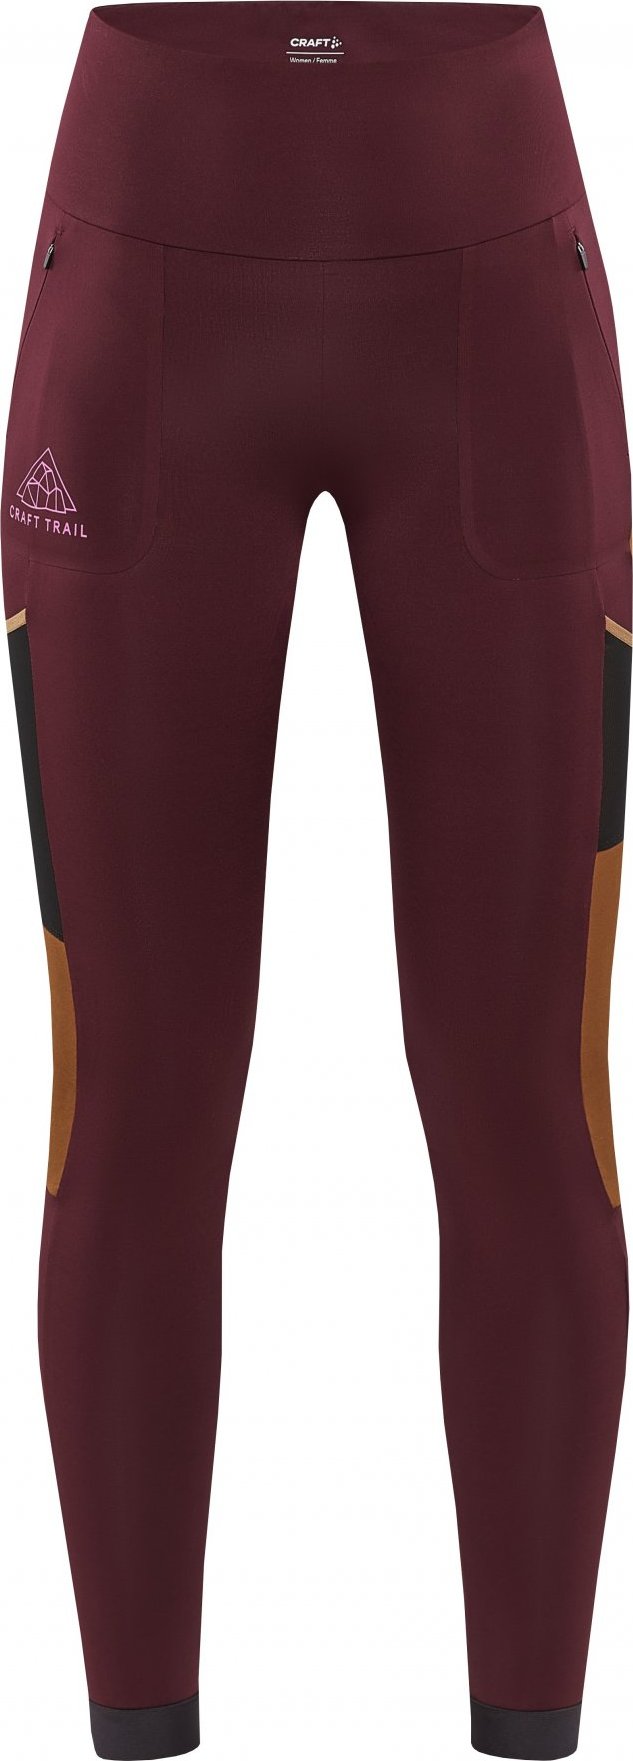 Dámské elastické kalhoty CRAFT Pro Trail Tights fialové Velikost: M